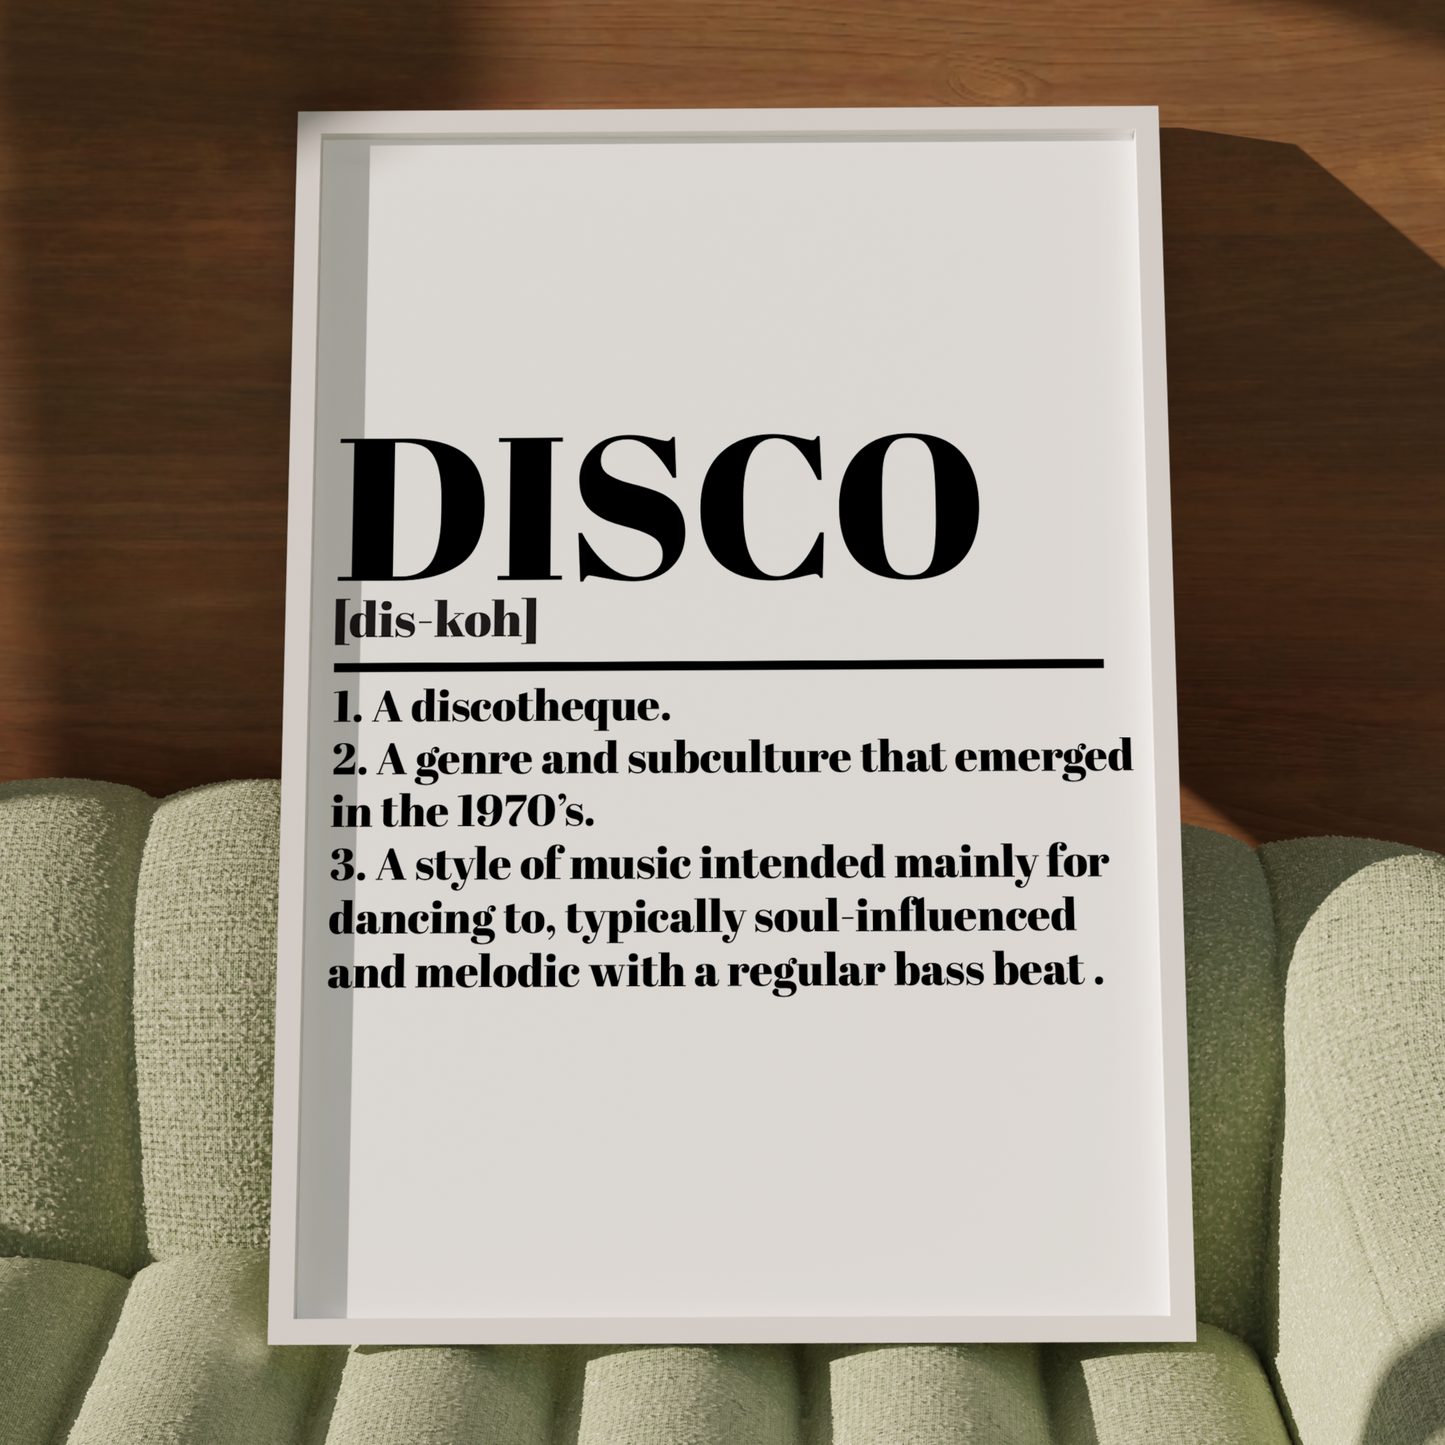 Dictionary: DISCO